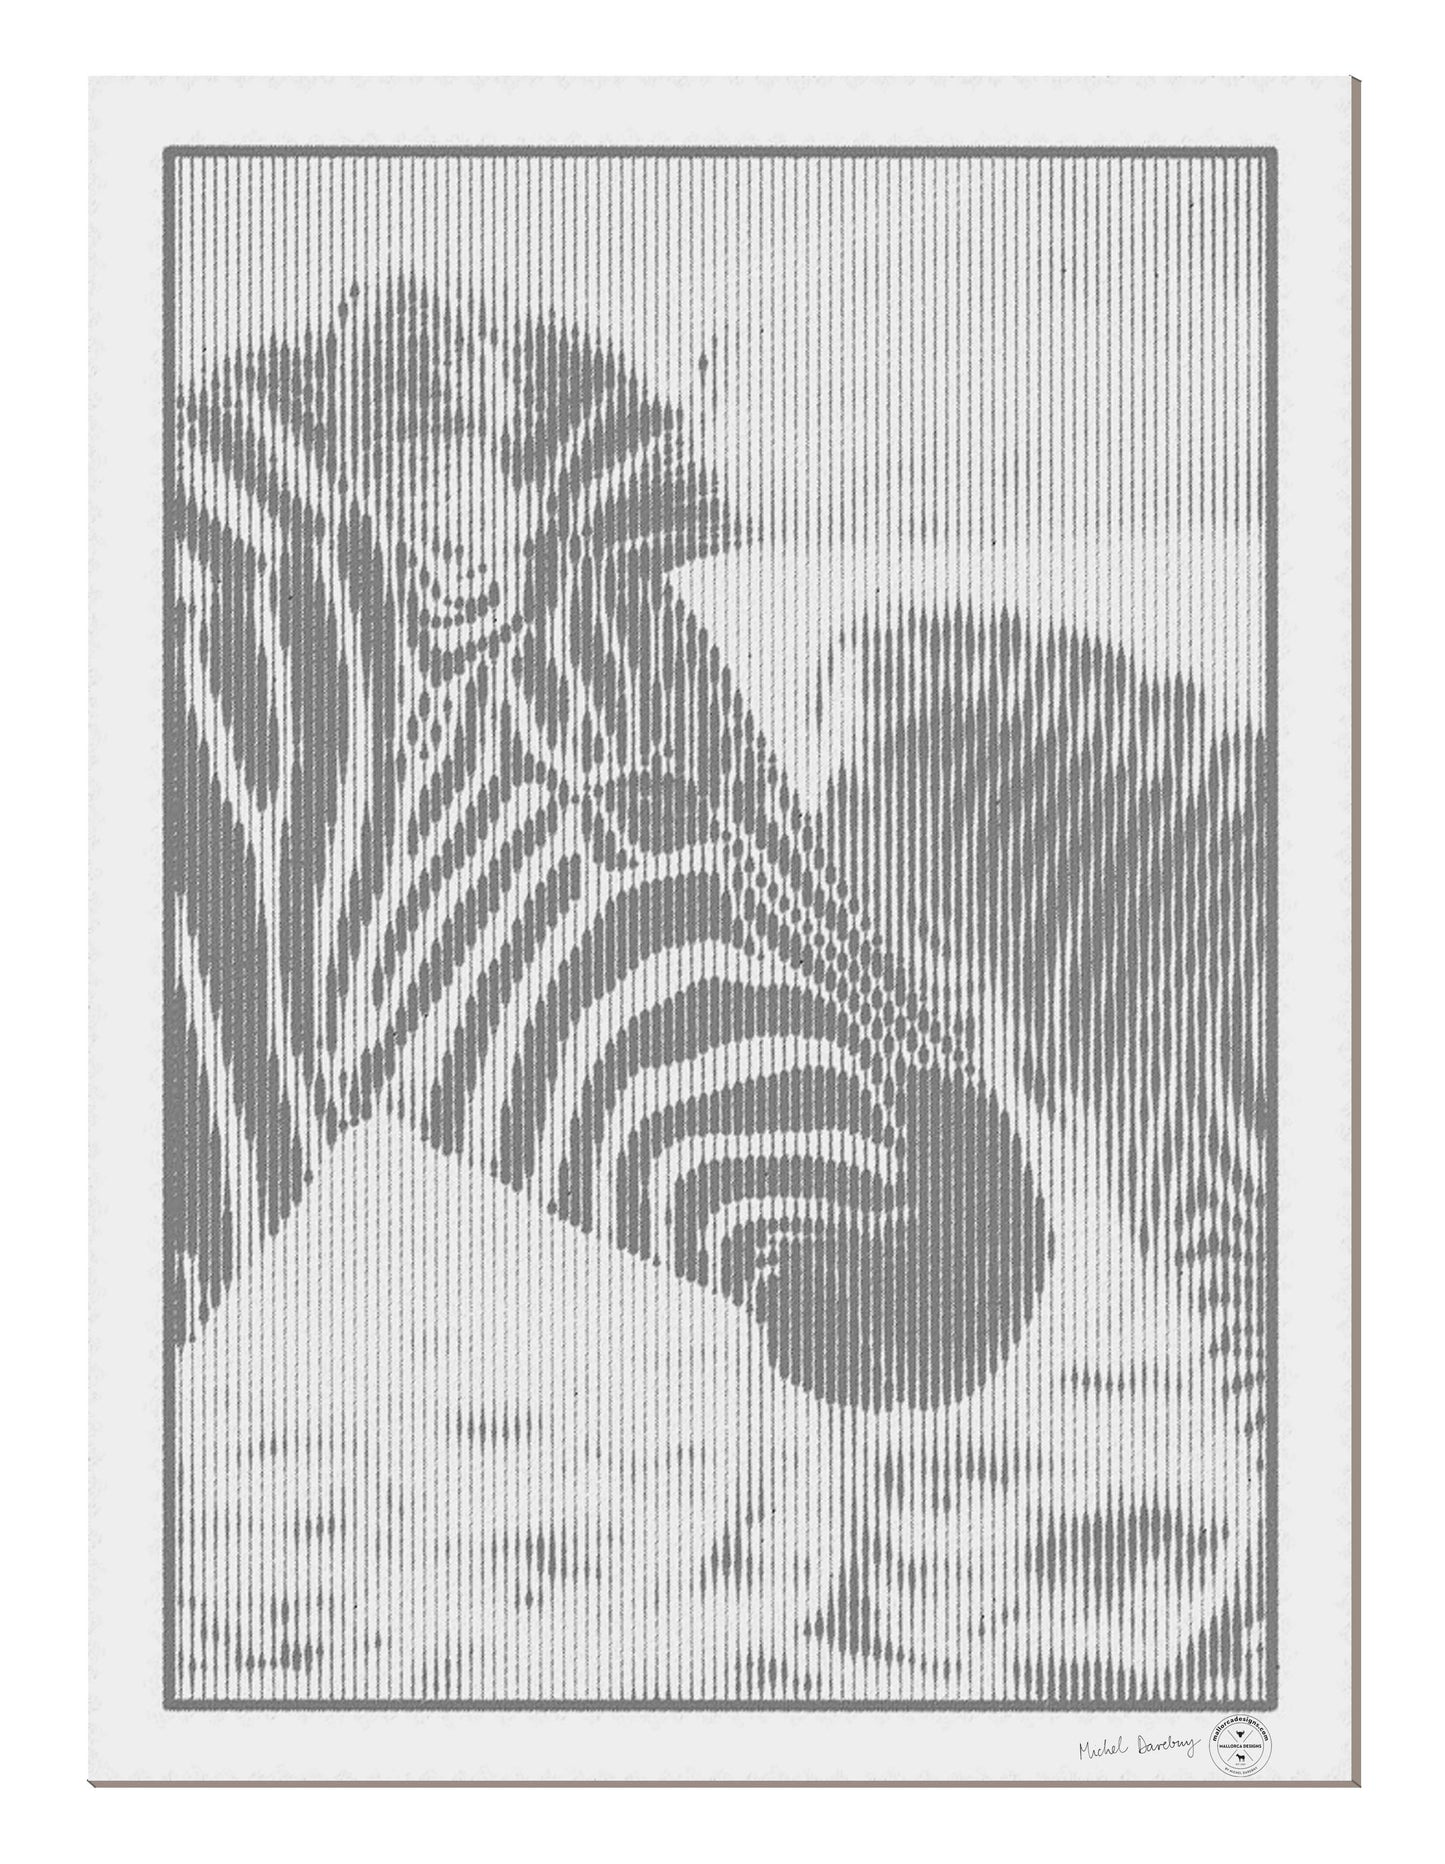 A0 Portrait Zebra Right Photograph: Michel Darebny Limited to 50